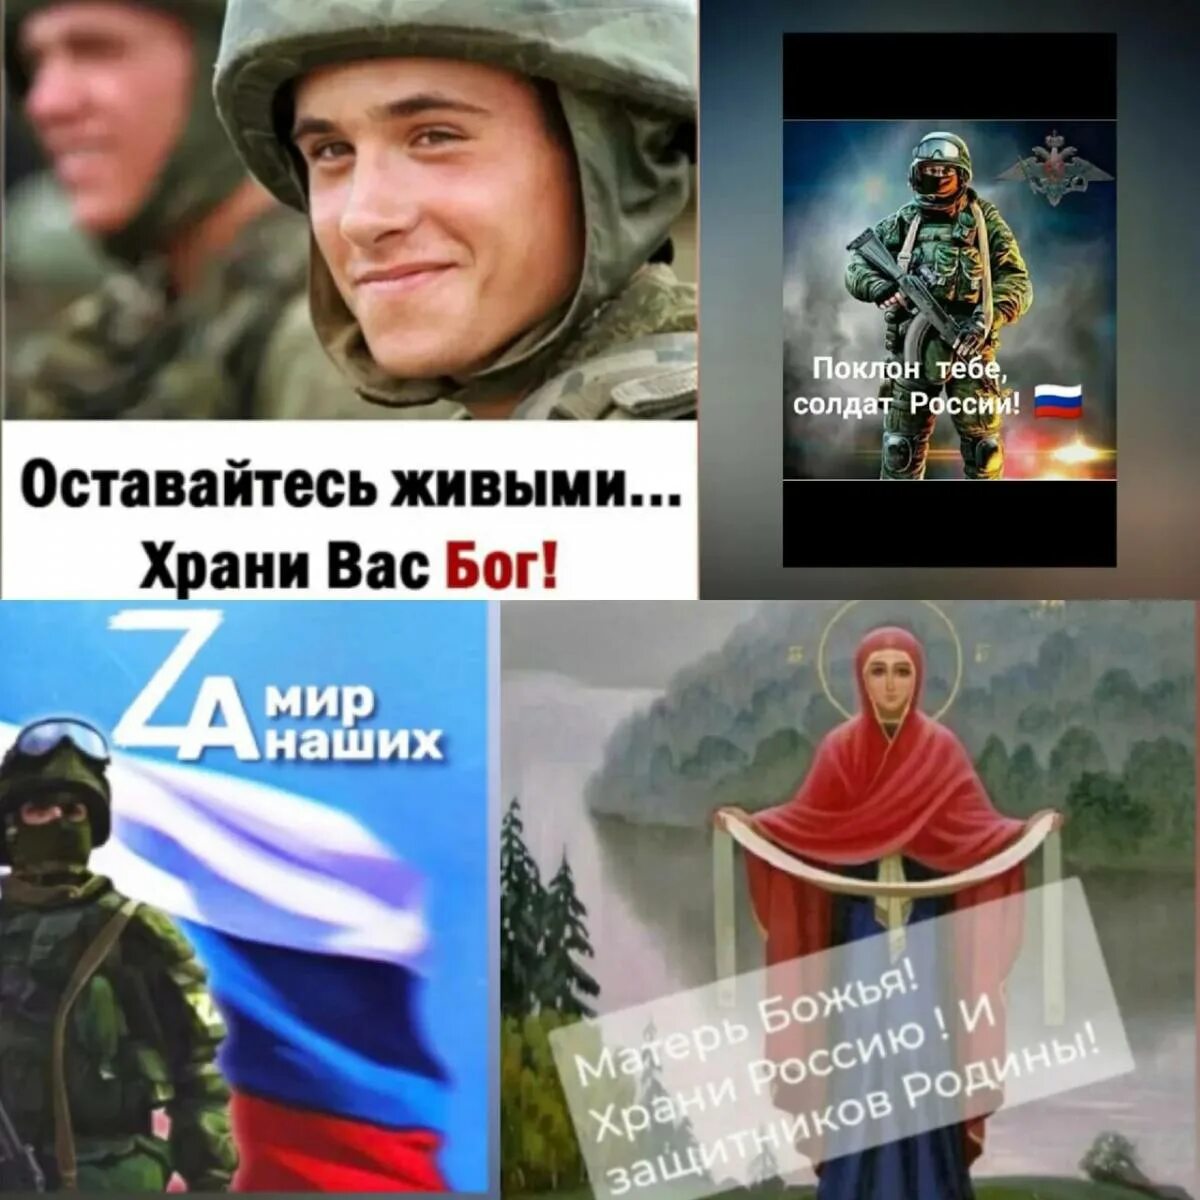 Спасибо тебе солдат. Поклон тебе солдат России. Спасибо тебе солд. Низкий поклон солдатам. Низкий поклон солдатам России.